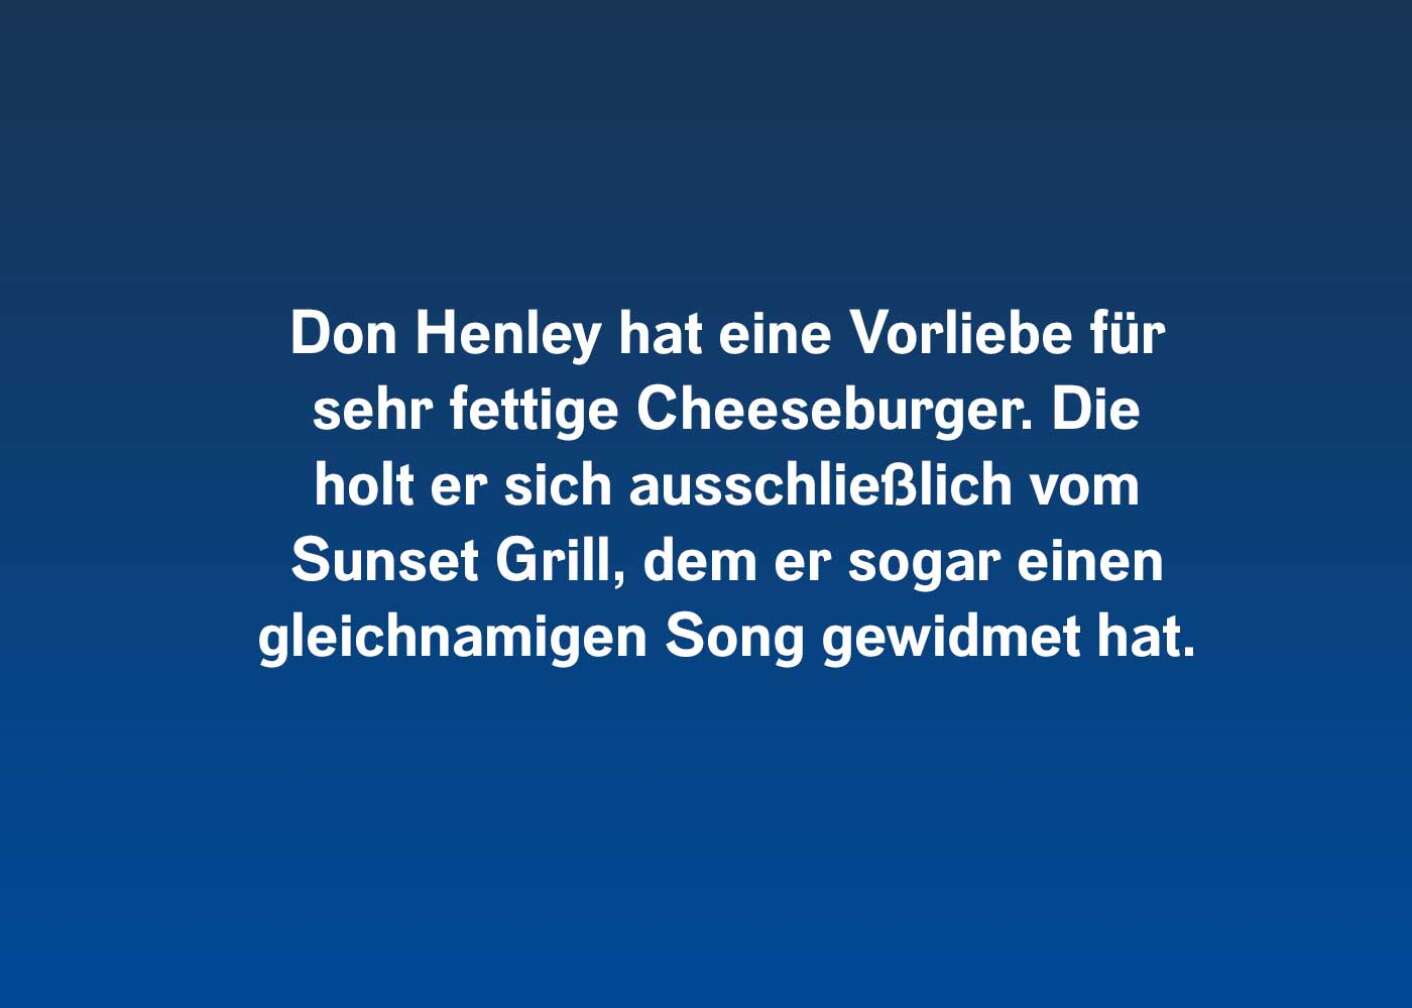 10 Fakten über Don Henley (hat eine Vorliebe)